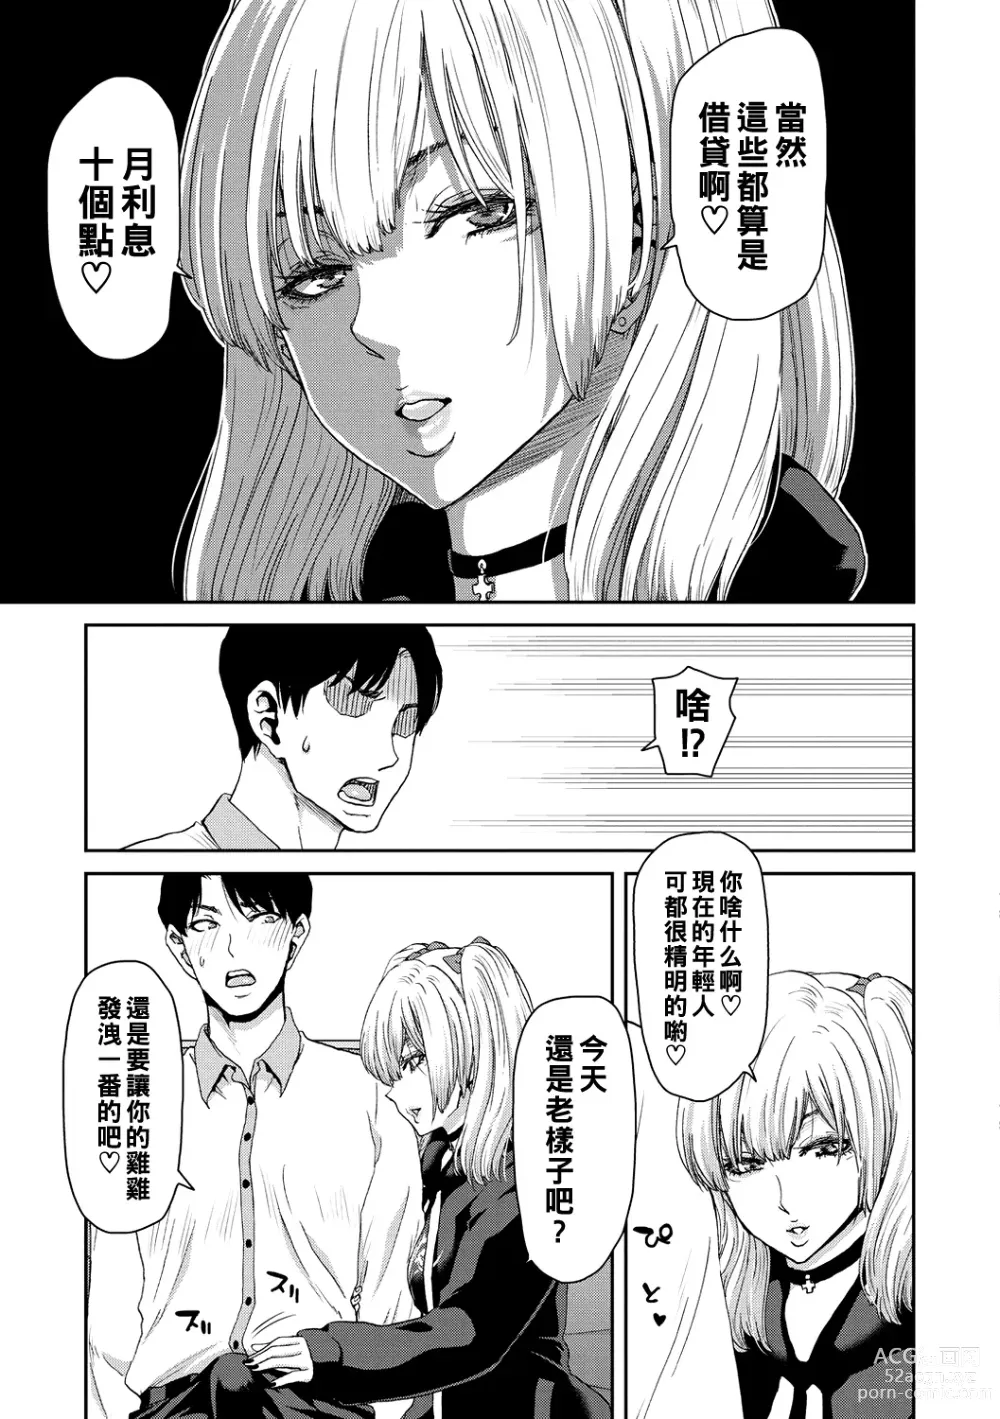 Page 11 of manga Shiyokka Hametsu SEX